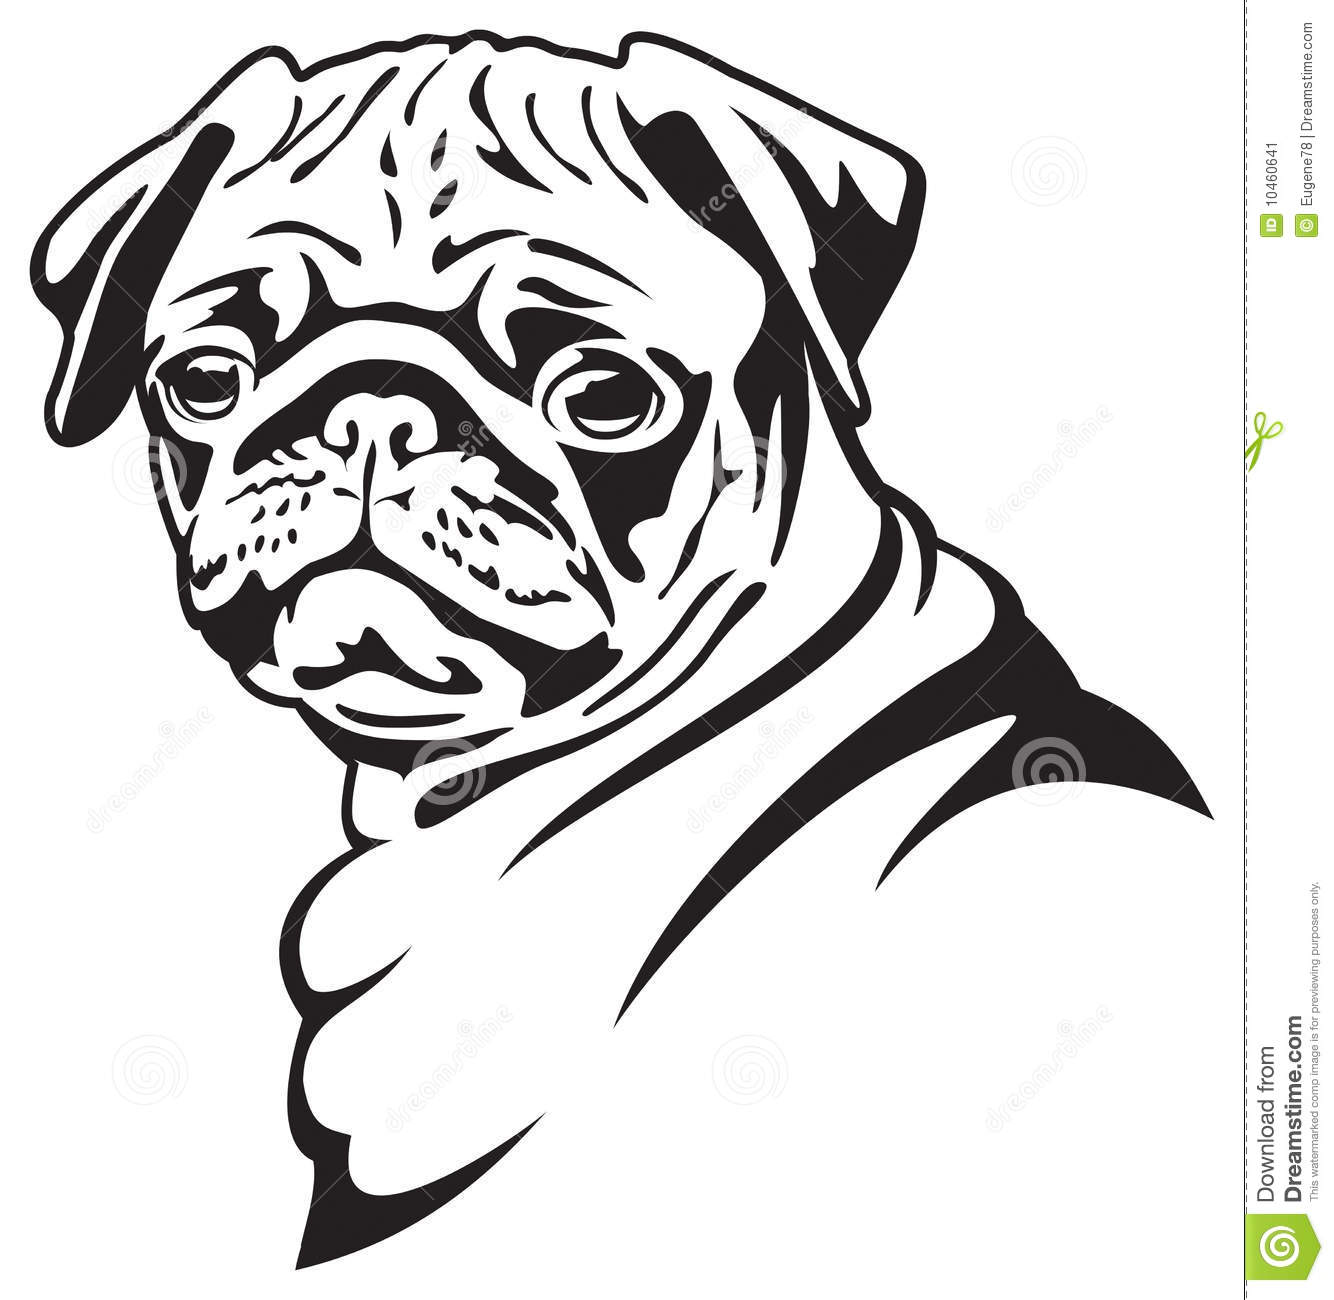 Dog  Pug Stock Image   Image  10460641